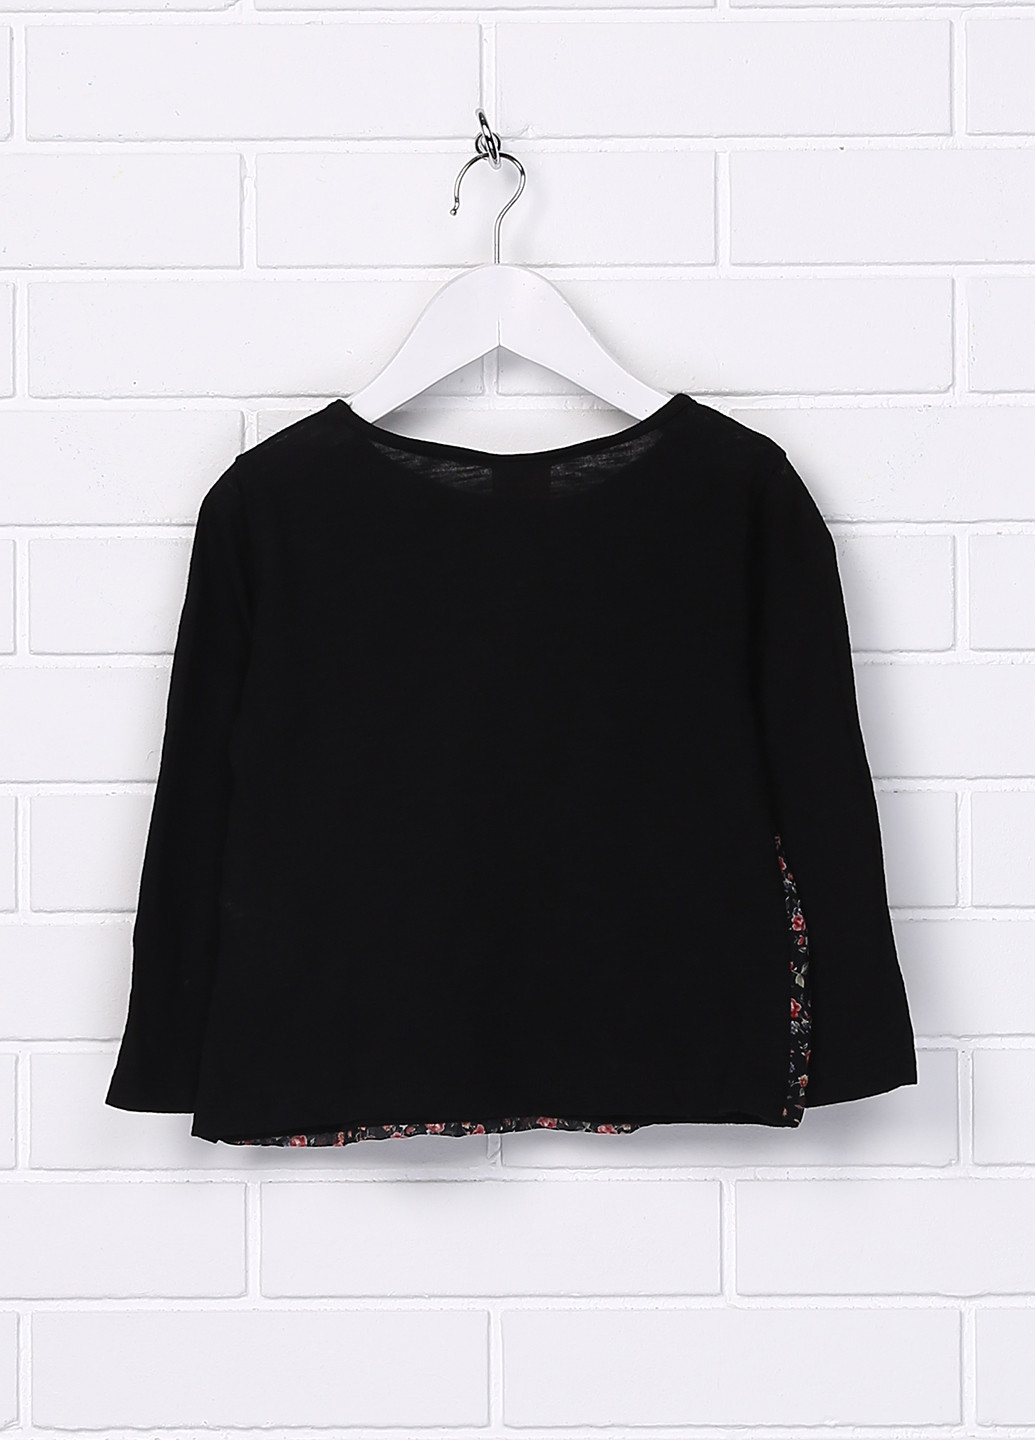 Черная цветочной расцветки блузка с длинным рукавом Zara демисезонная